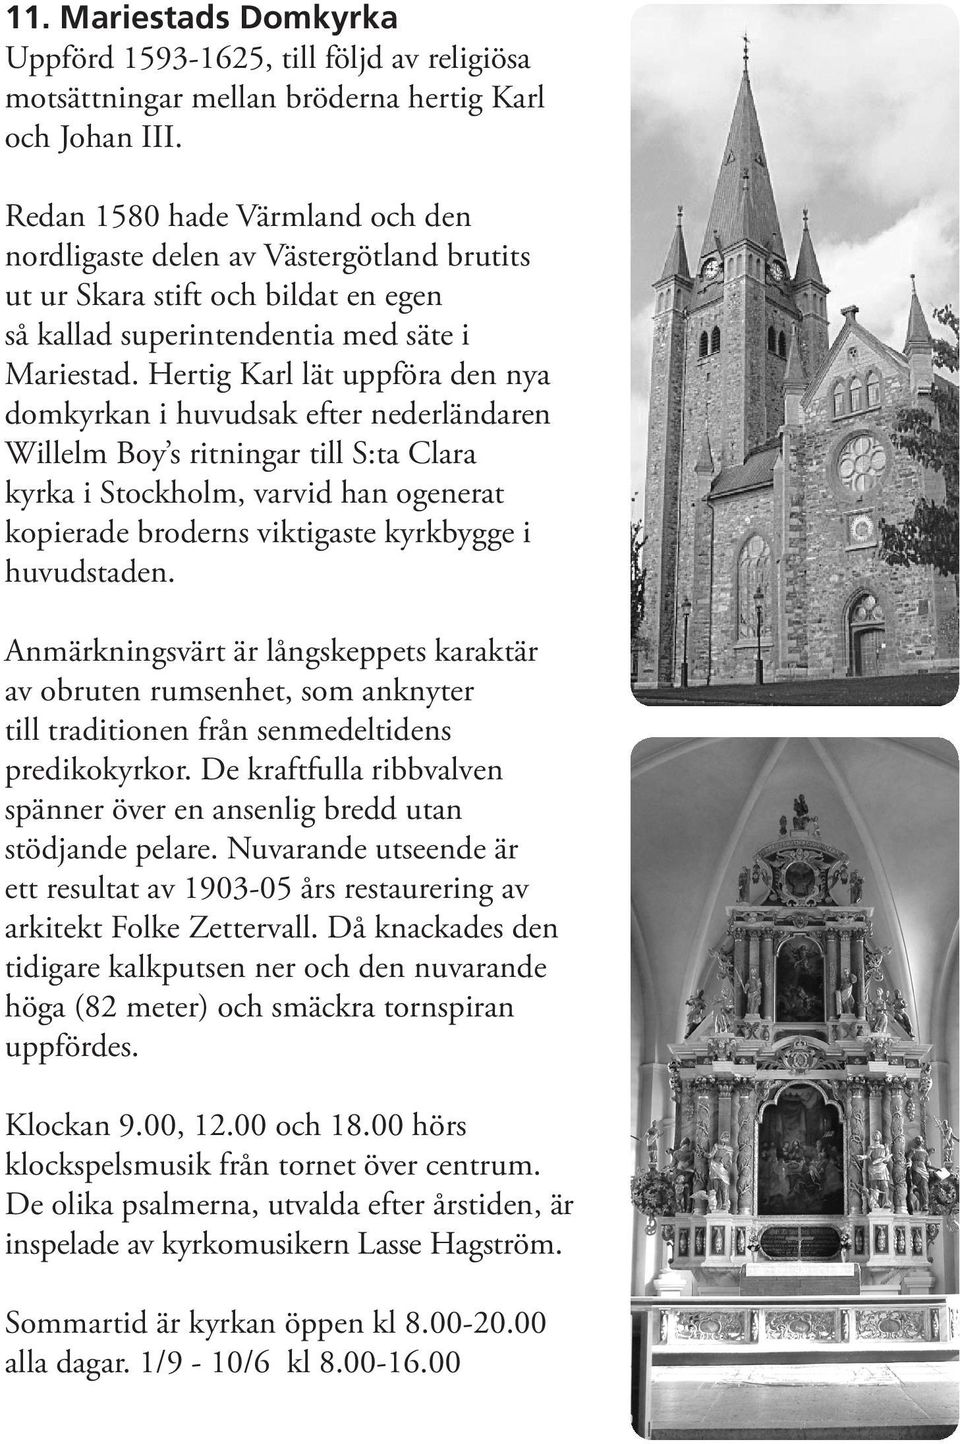 Hertig Karl lät uppföra den nya domkyrkan i huvudsak efter nederländaren Willelm Boy s ritningar till S:ta Clara kyrka i Stockholm, varvid han ogenerat kopierade broderns viktigaste kyrkbygge i